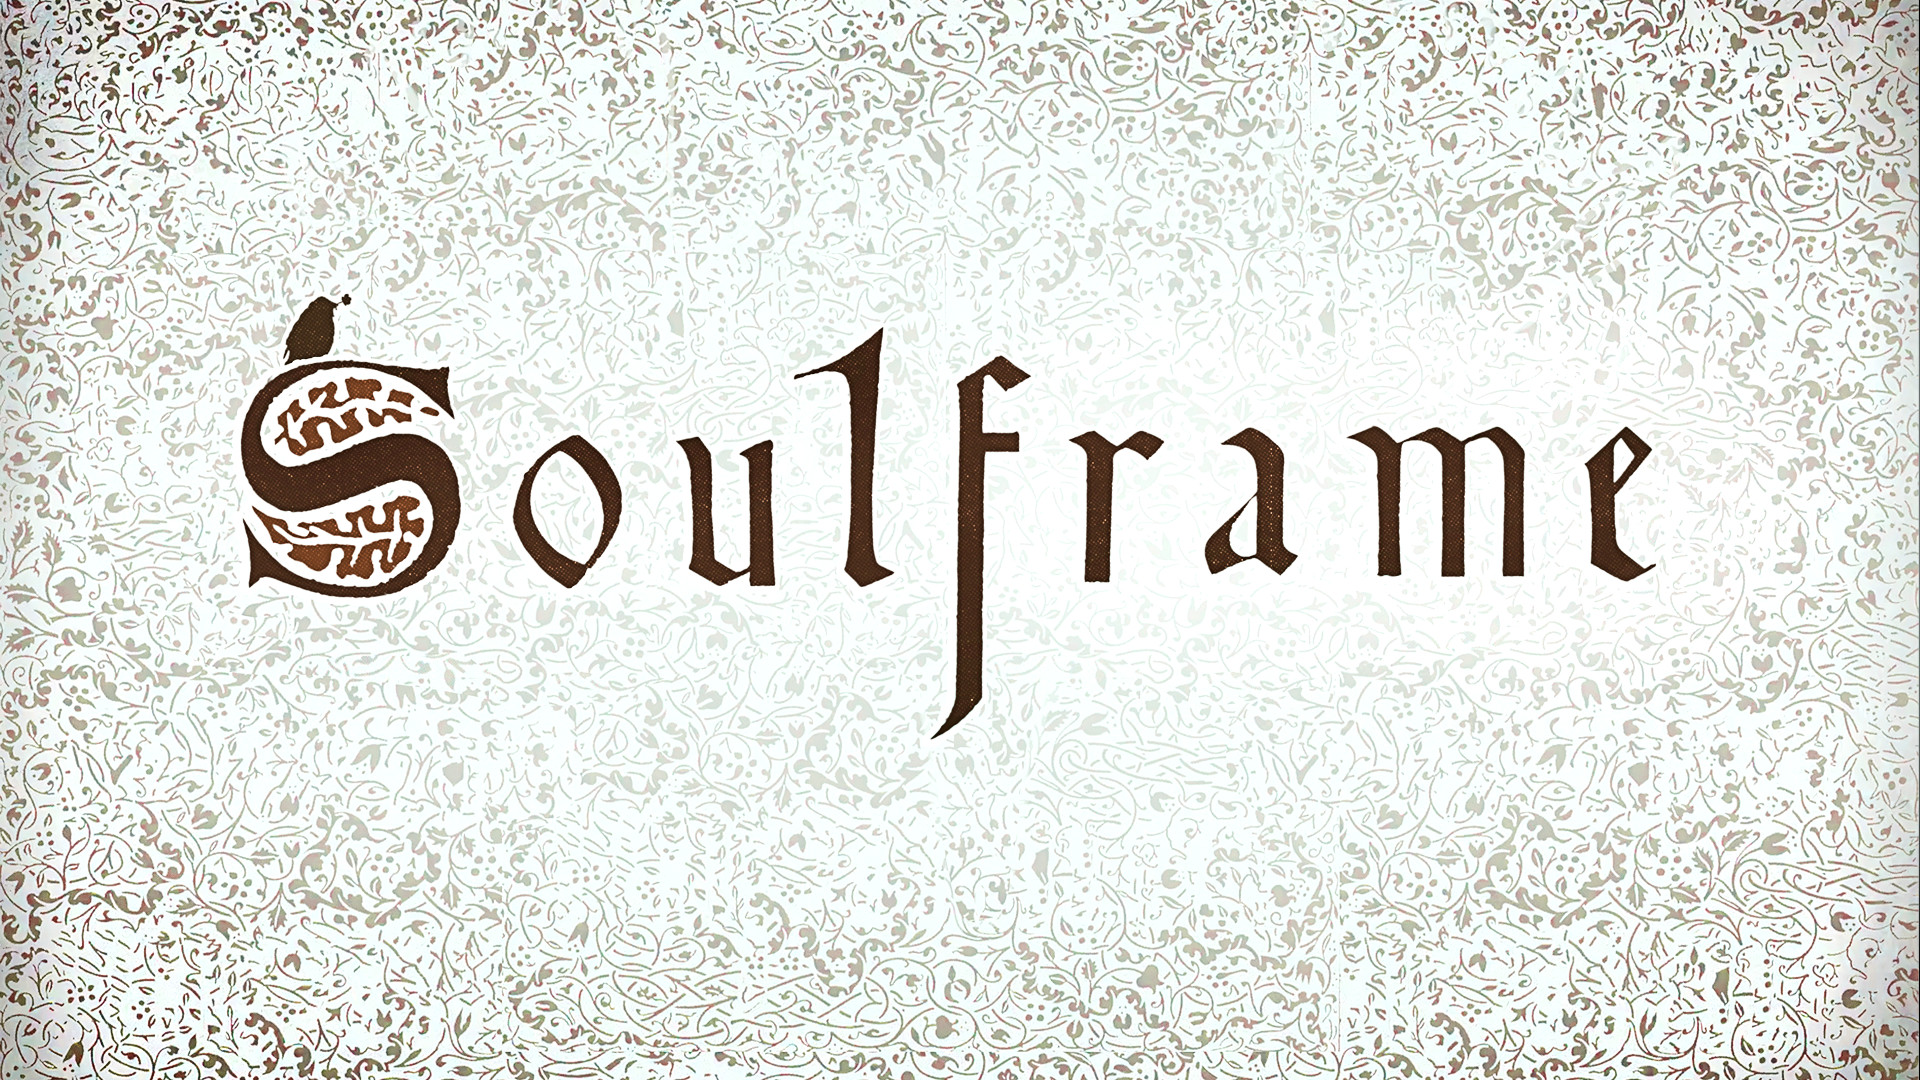 Soulframe ist das nächste von Studio Ghibli inspirierte MMO von Warframe Dev